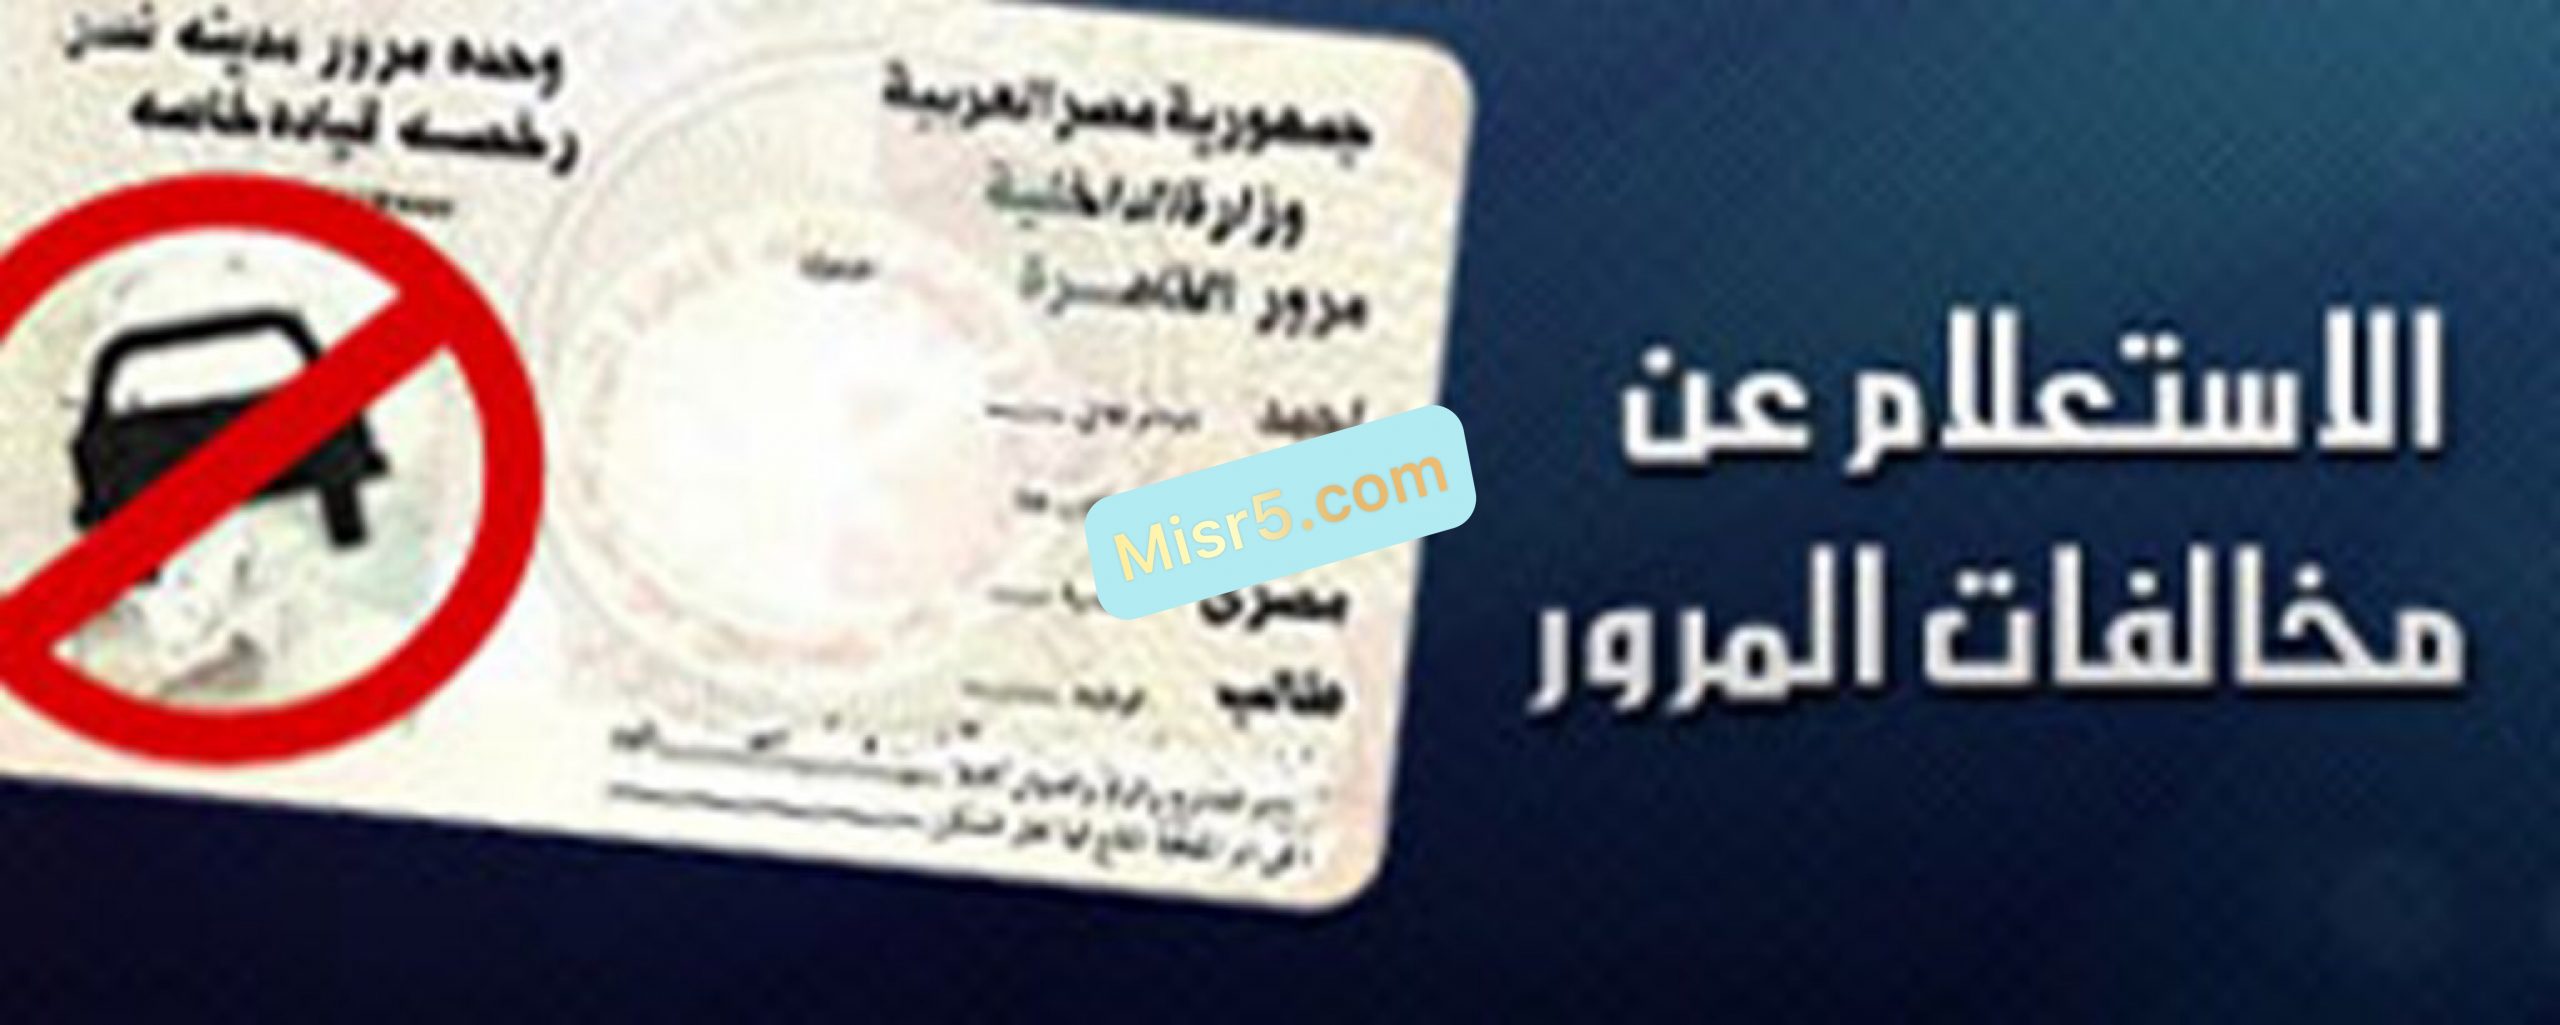 خطوات السداد والاستعلام عن مخالفات السيارة برقم اللوحة إليكترونياً- مصر 2021